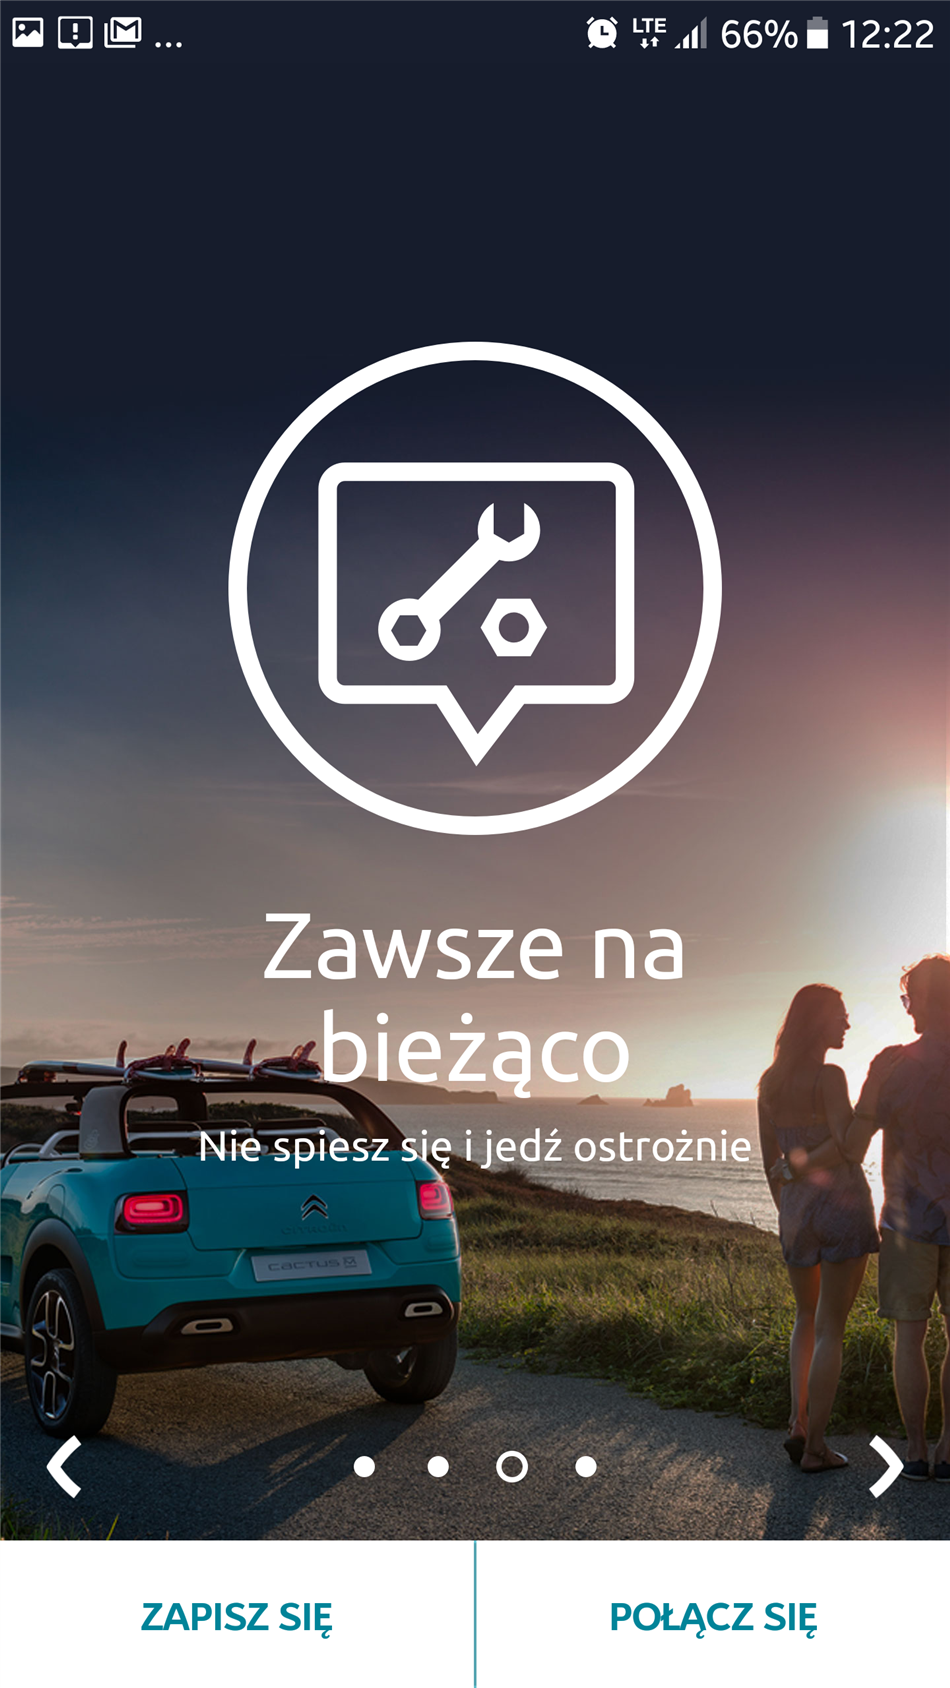 Citroën uruchamia nową aplikację mobilną - My Citroën